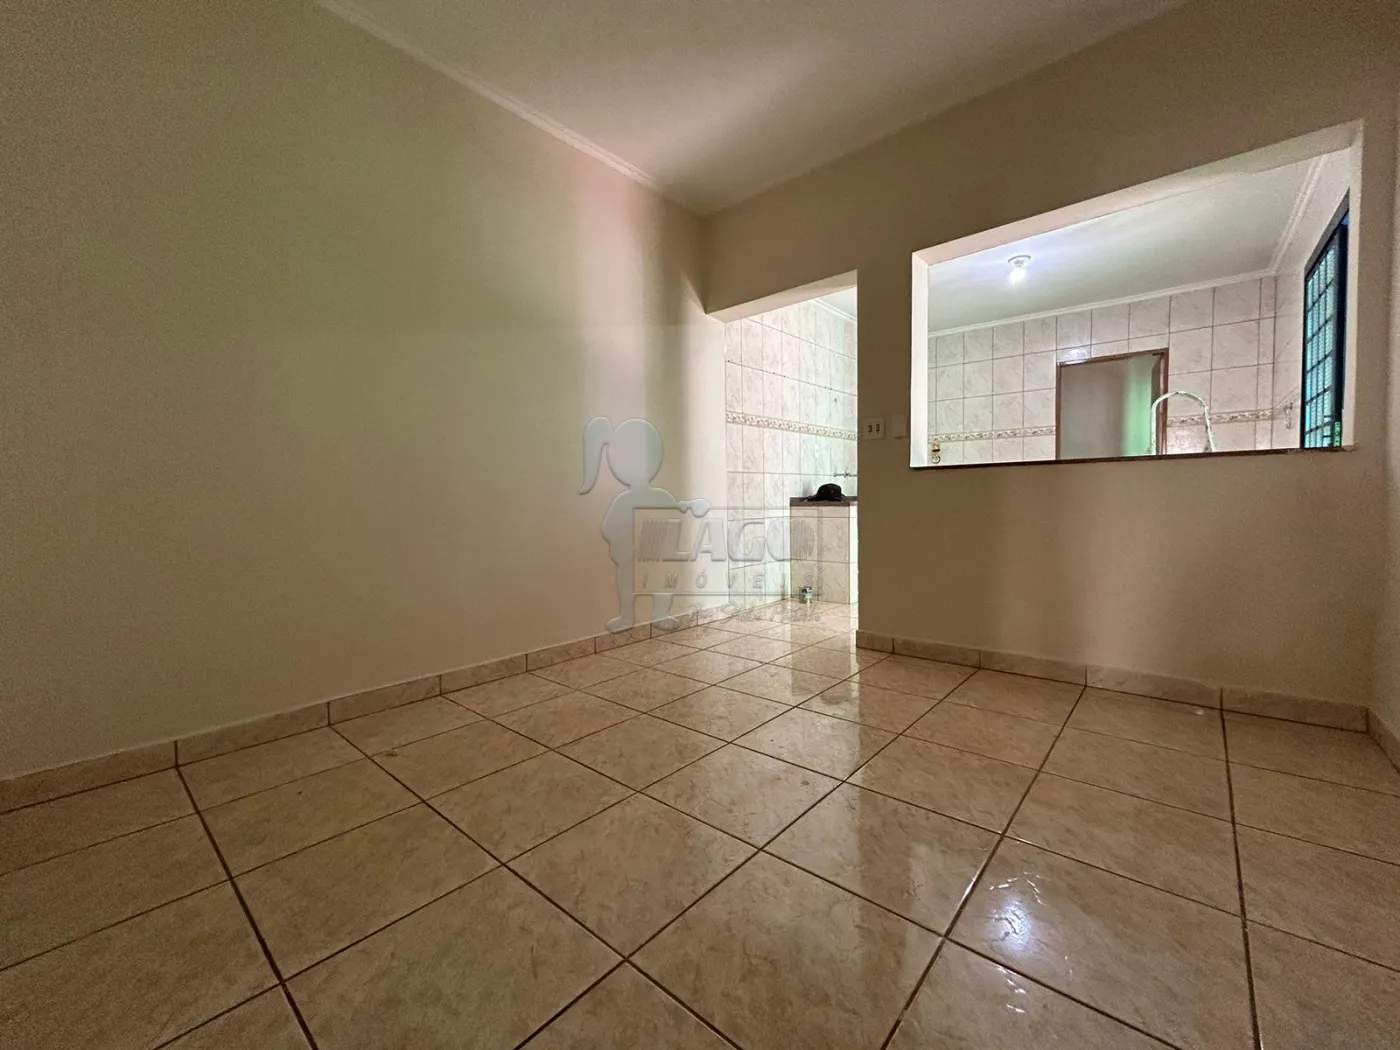 Comprar Casa / Padrão em Ribeirão Preto R$ 285.000,00 - Foto 4